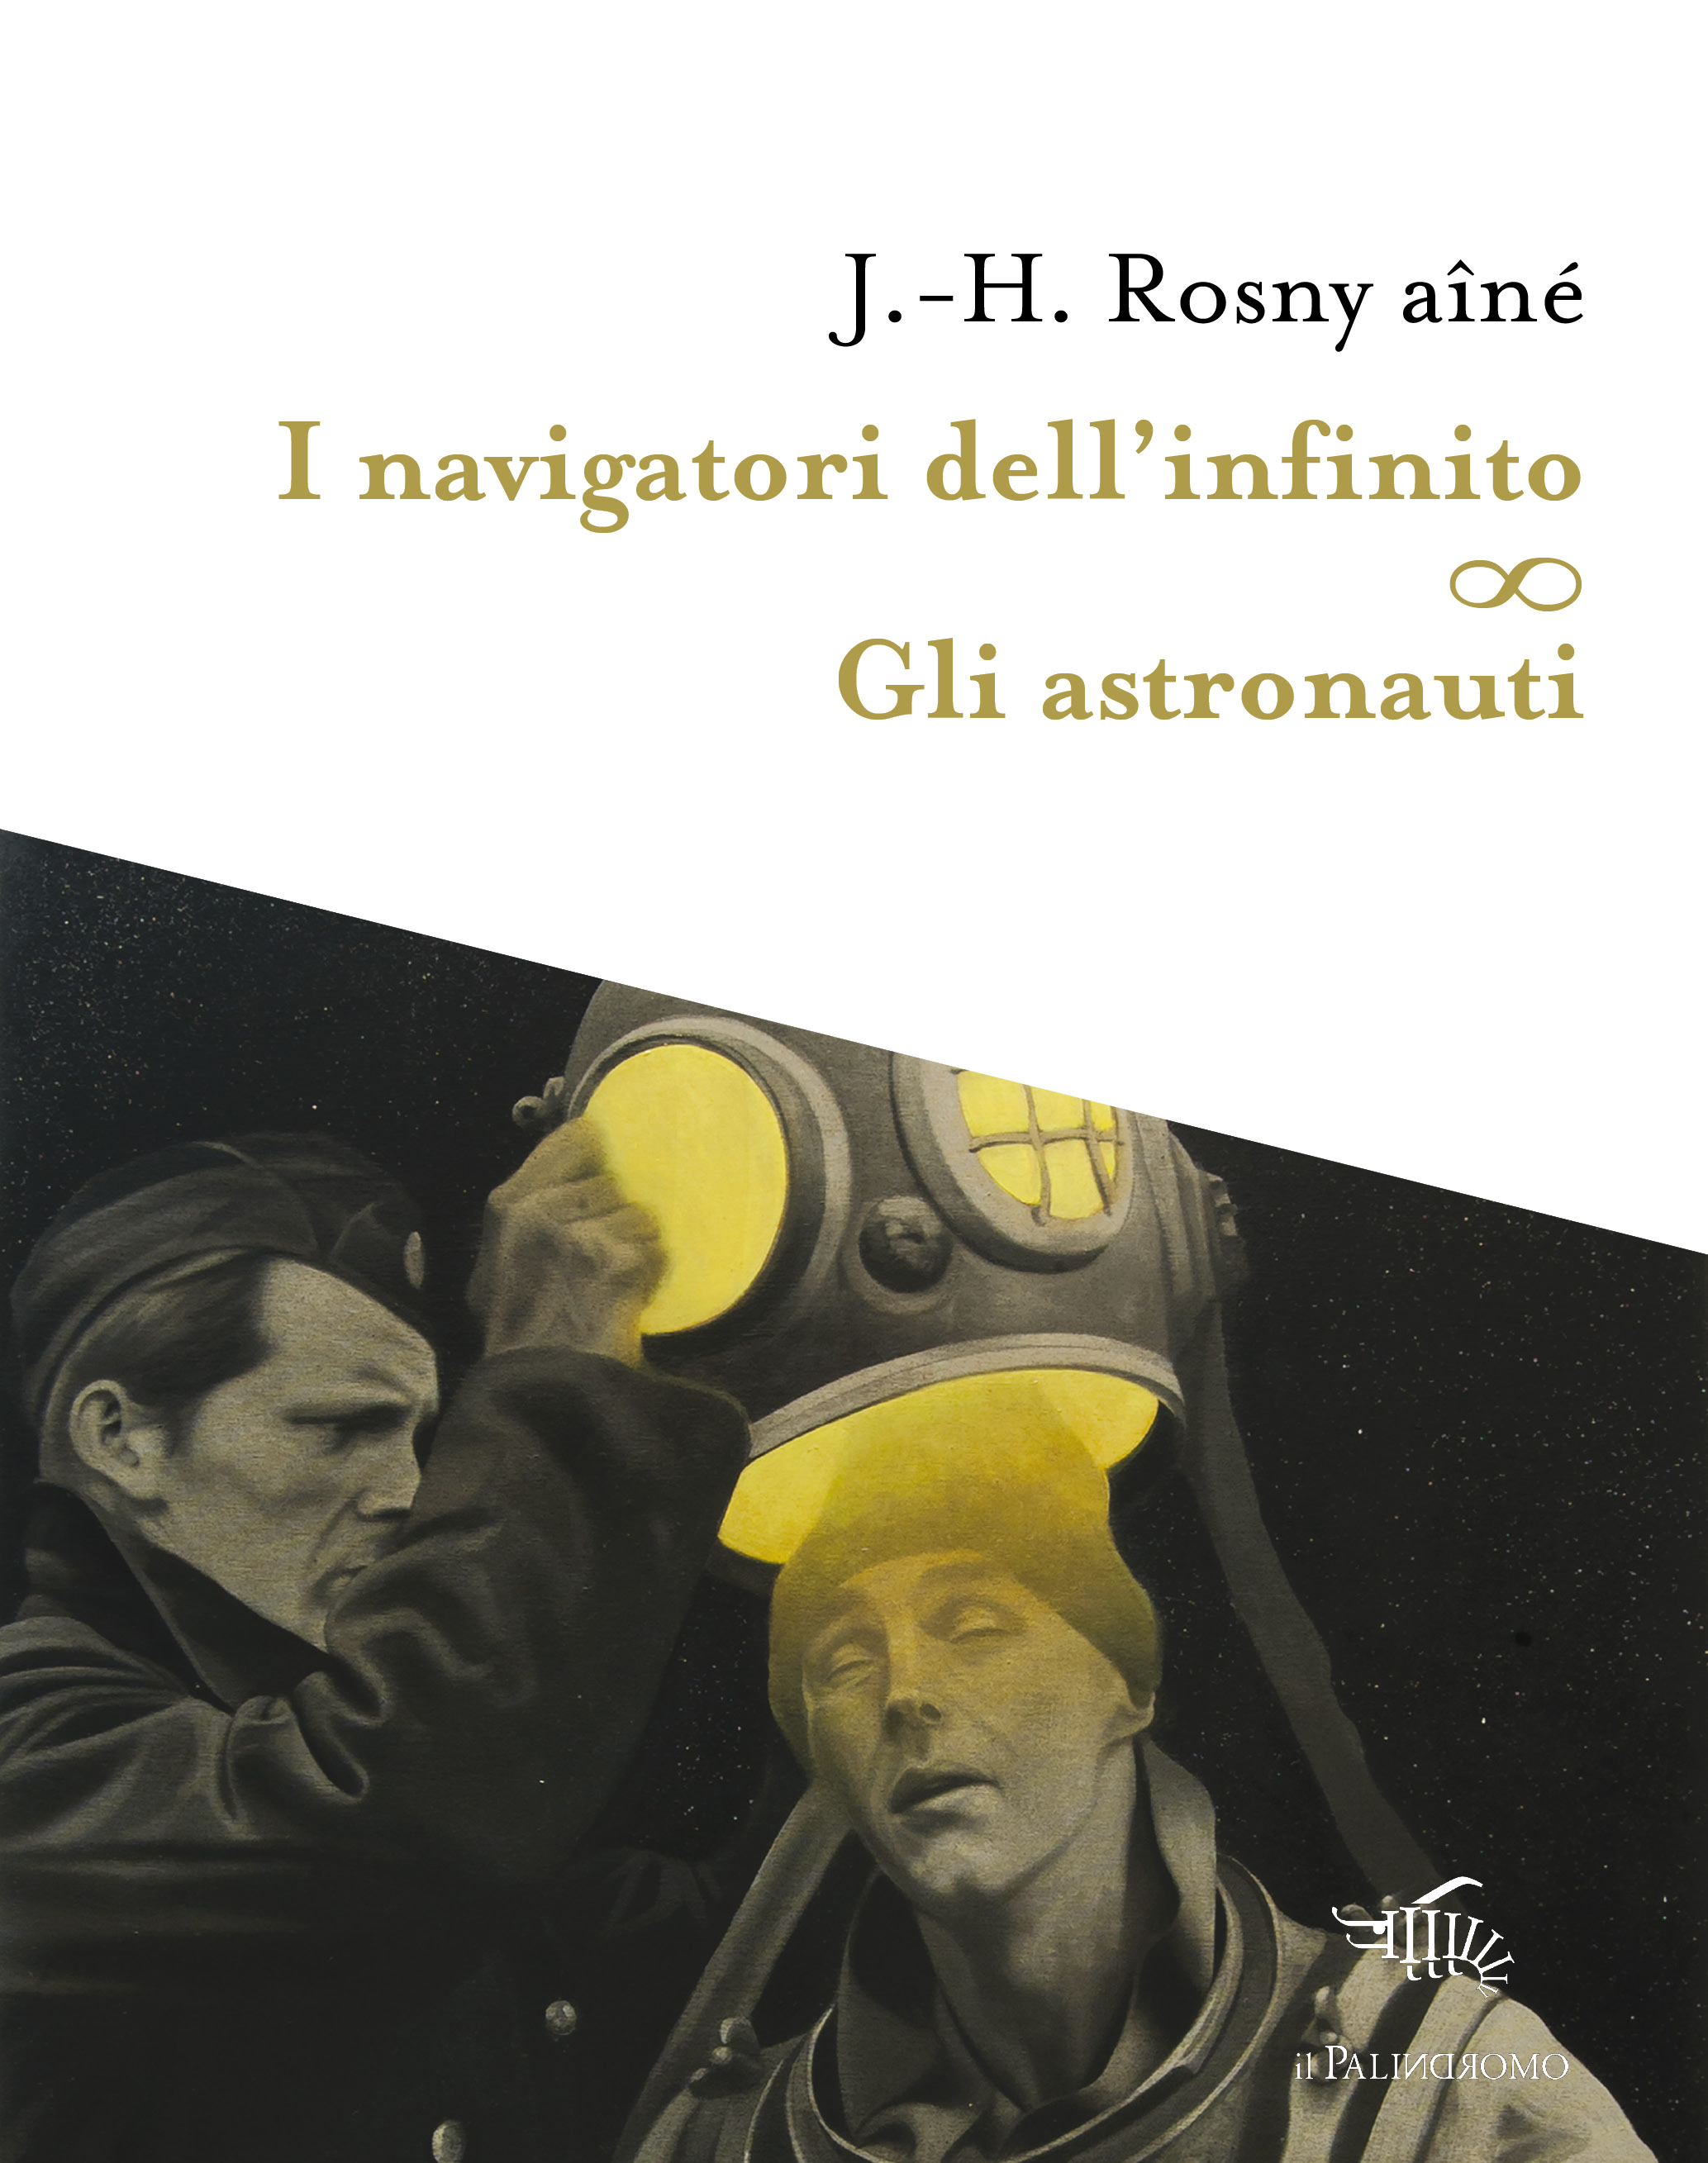 I navigatori dell’infinito – Gli astronauti di J. H. Rosny aîné